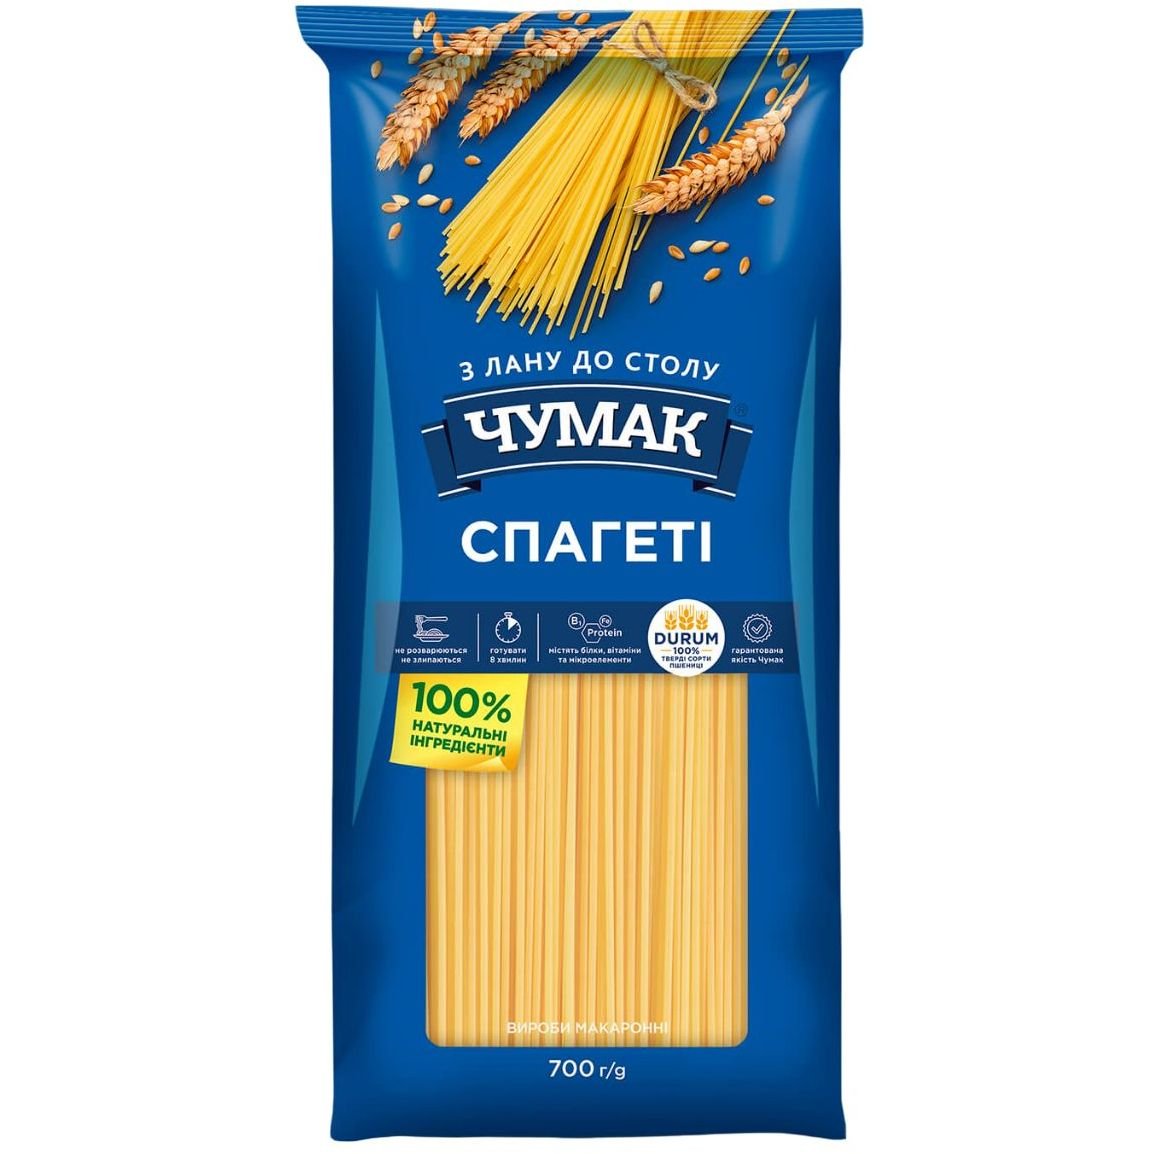 Вироби макаронні Чумак Спагетті, 700 г (695186) - фото 1